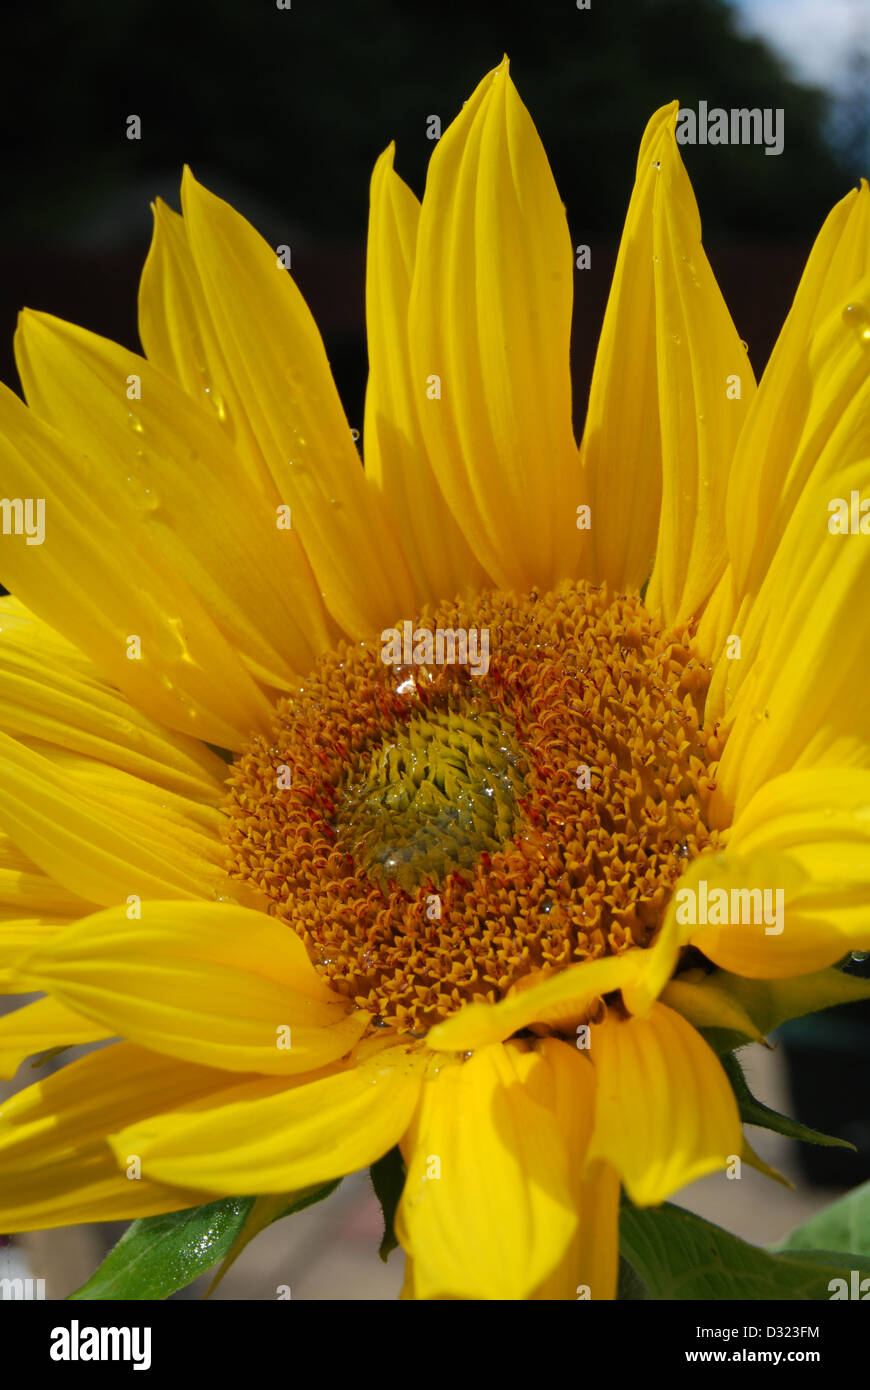 Un girasole con goccioline di acqua sulla sua petali e semi guardando la luce in estate con luminosi attraenti colori giallo Foto Stock